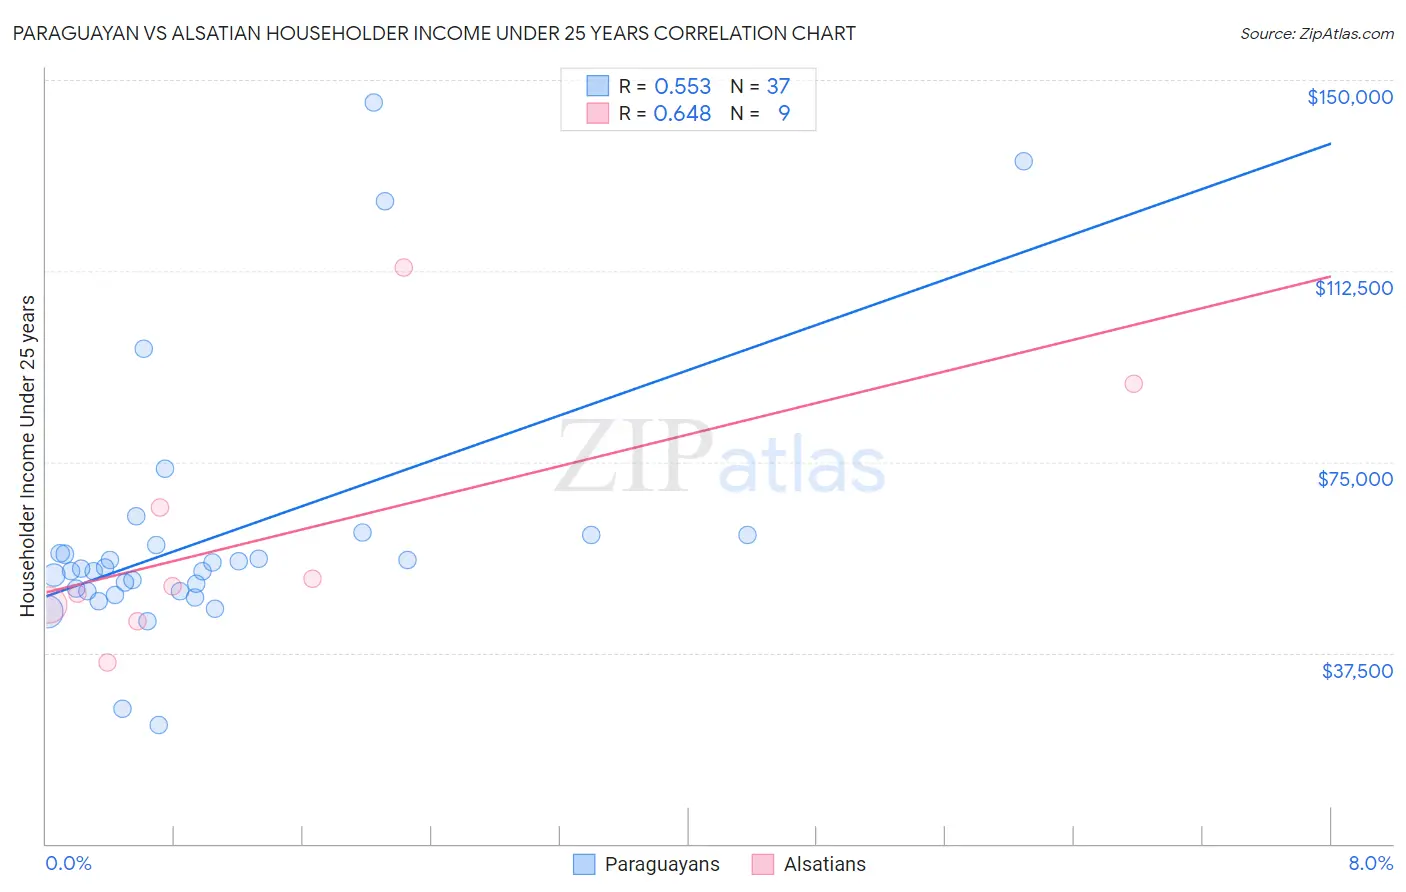 Paraguayan vs Alsatian Householder Income Under 25 years